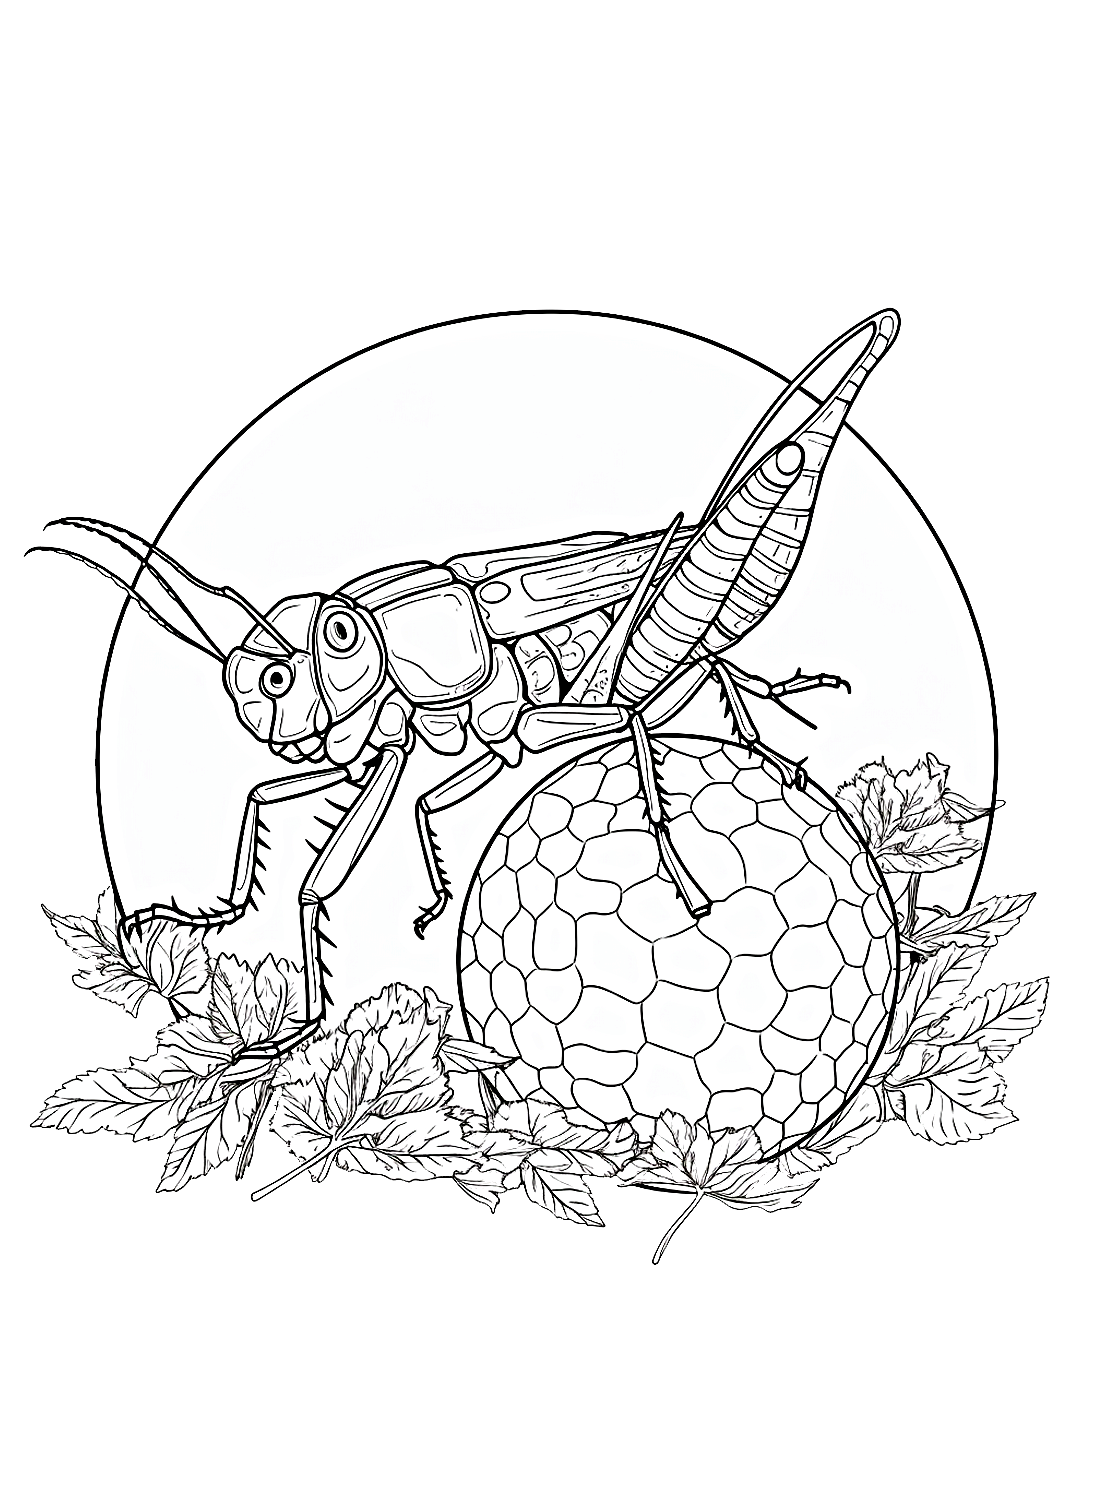 De Locust en een gigantische ballon van Locust